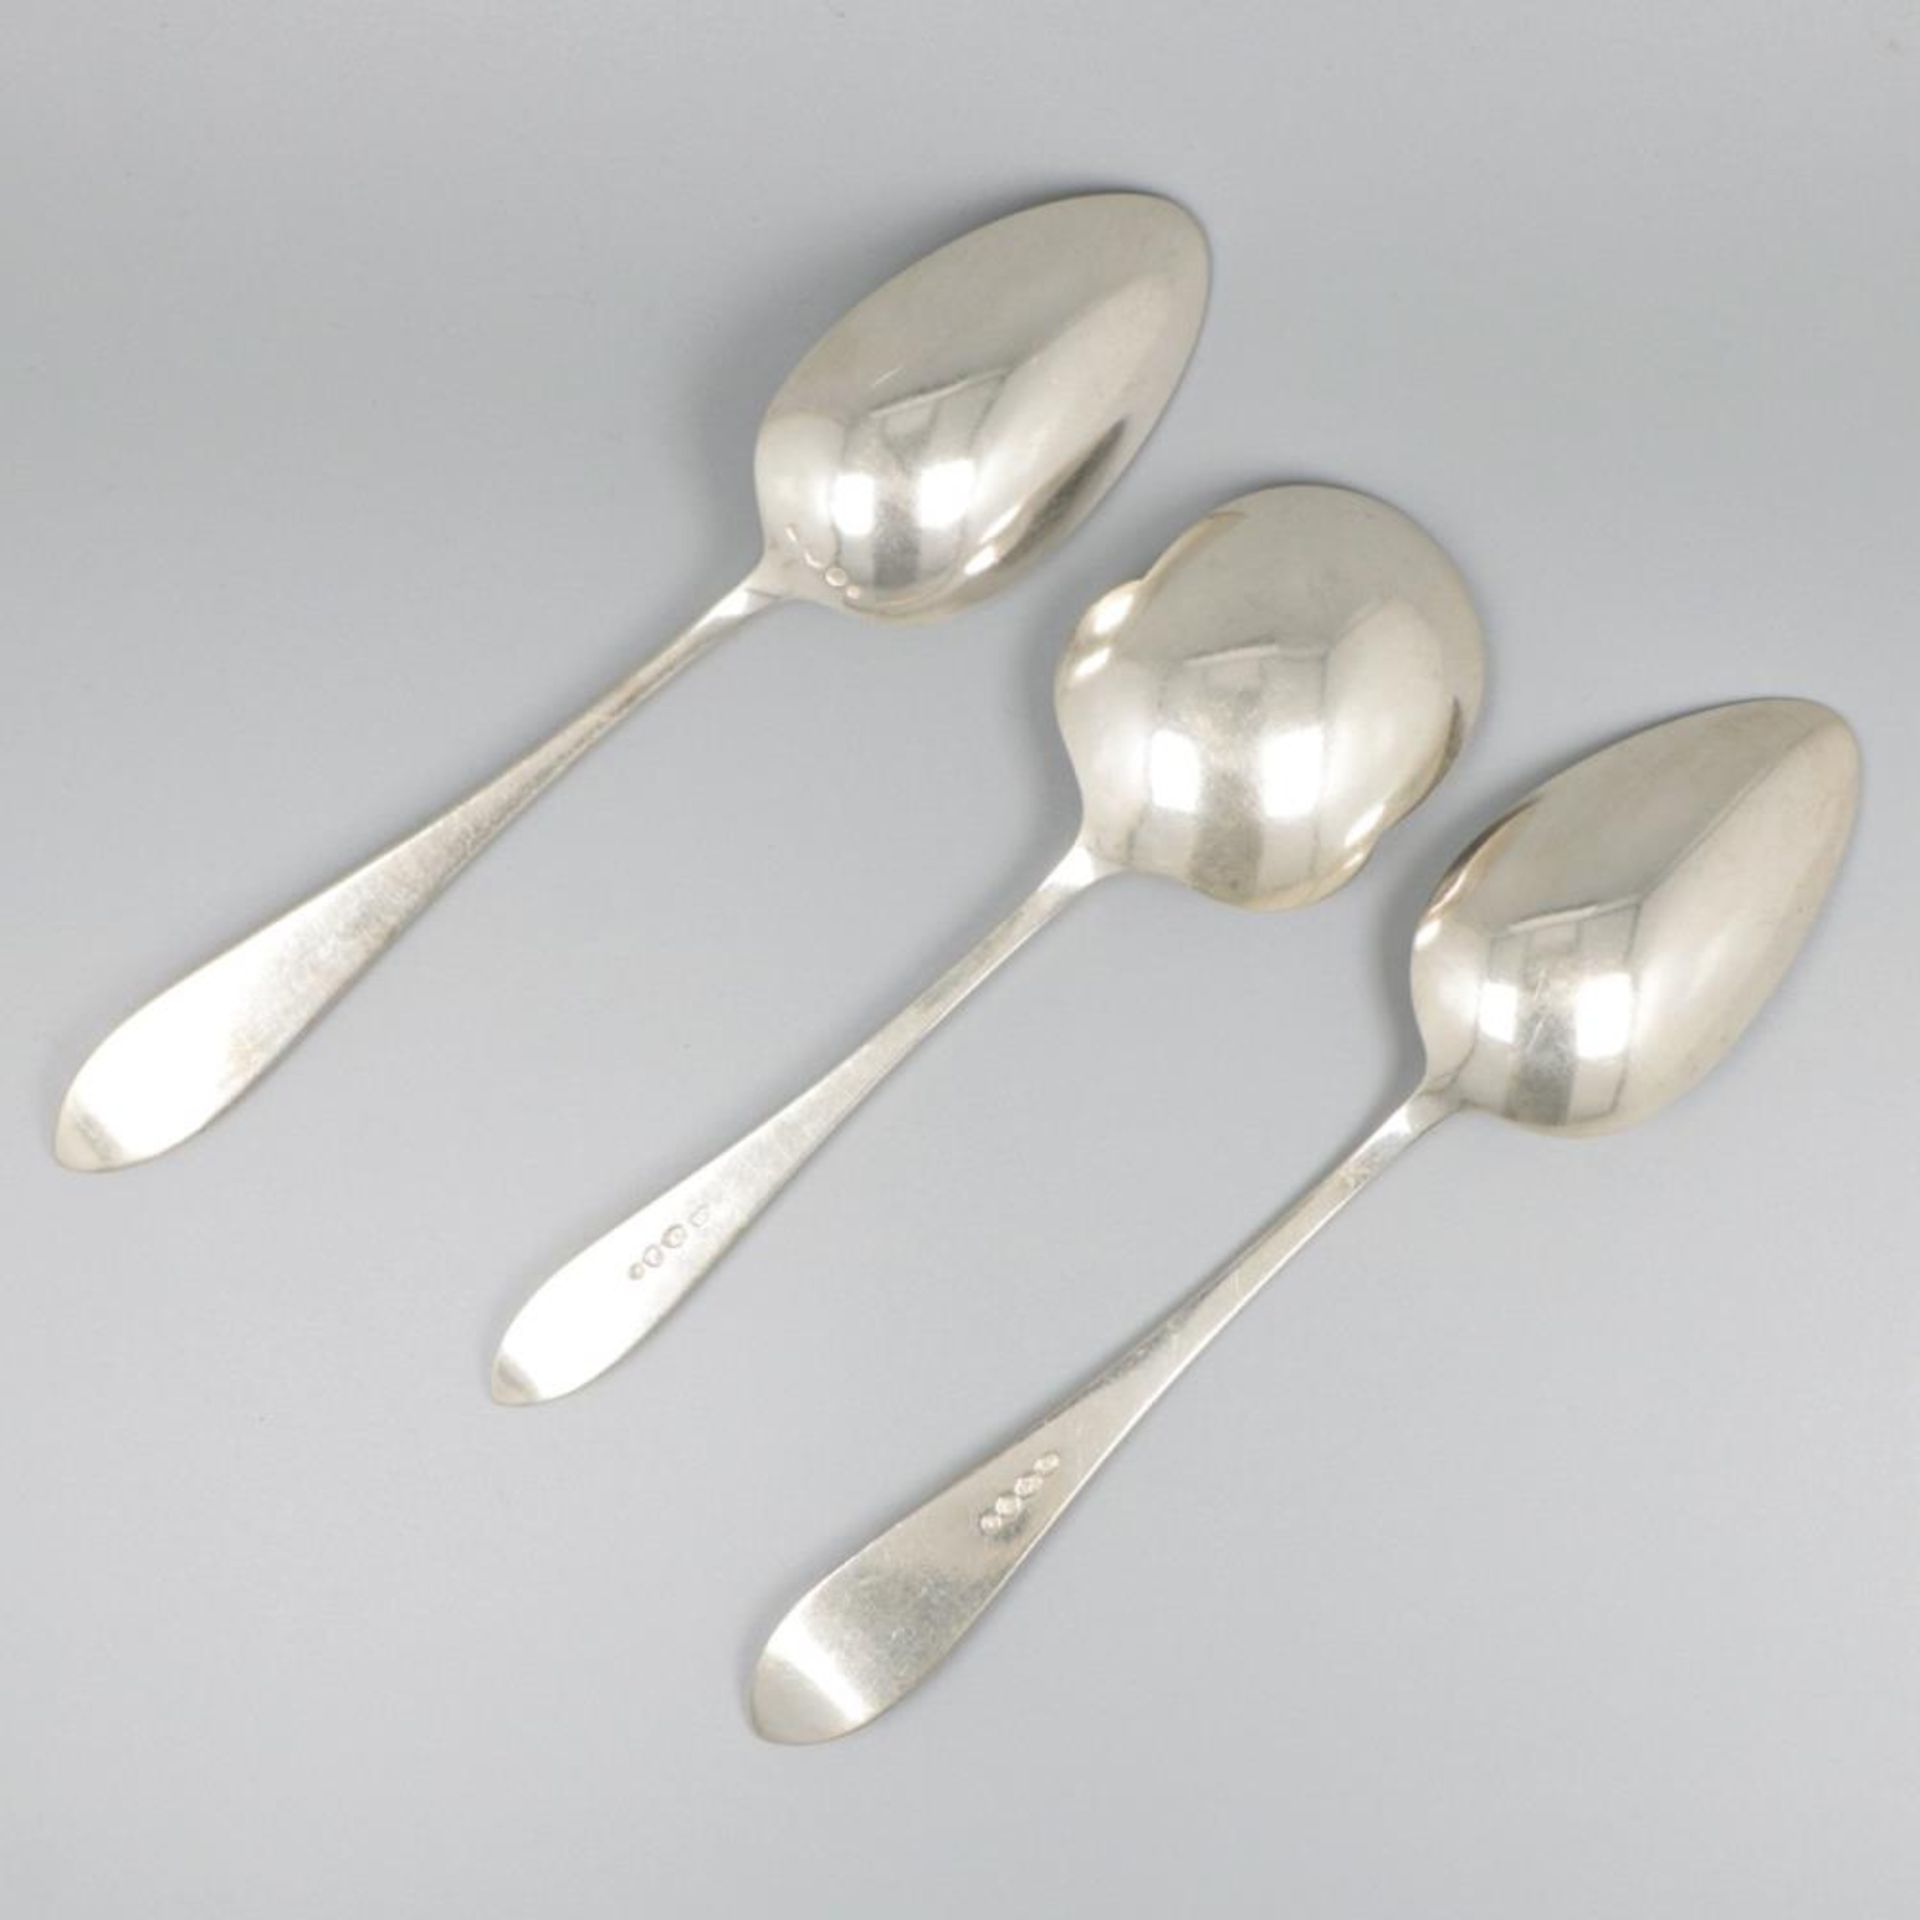 3-piece set of ladles "Hollands Puntfilet" silver. - Image 2 of 7